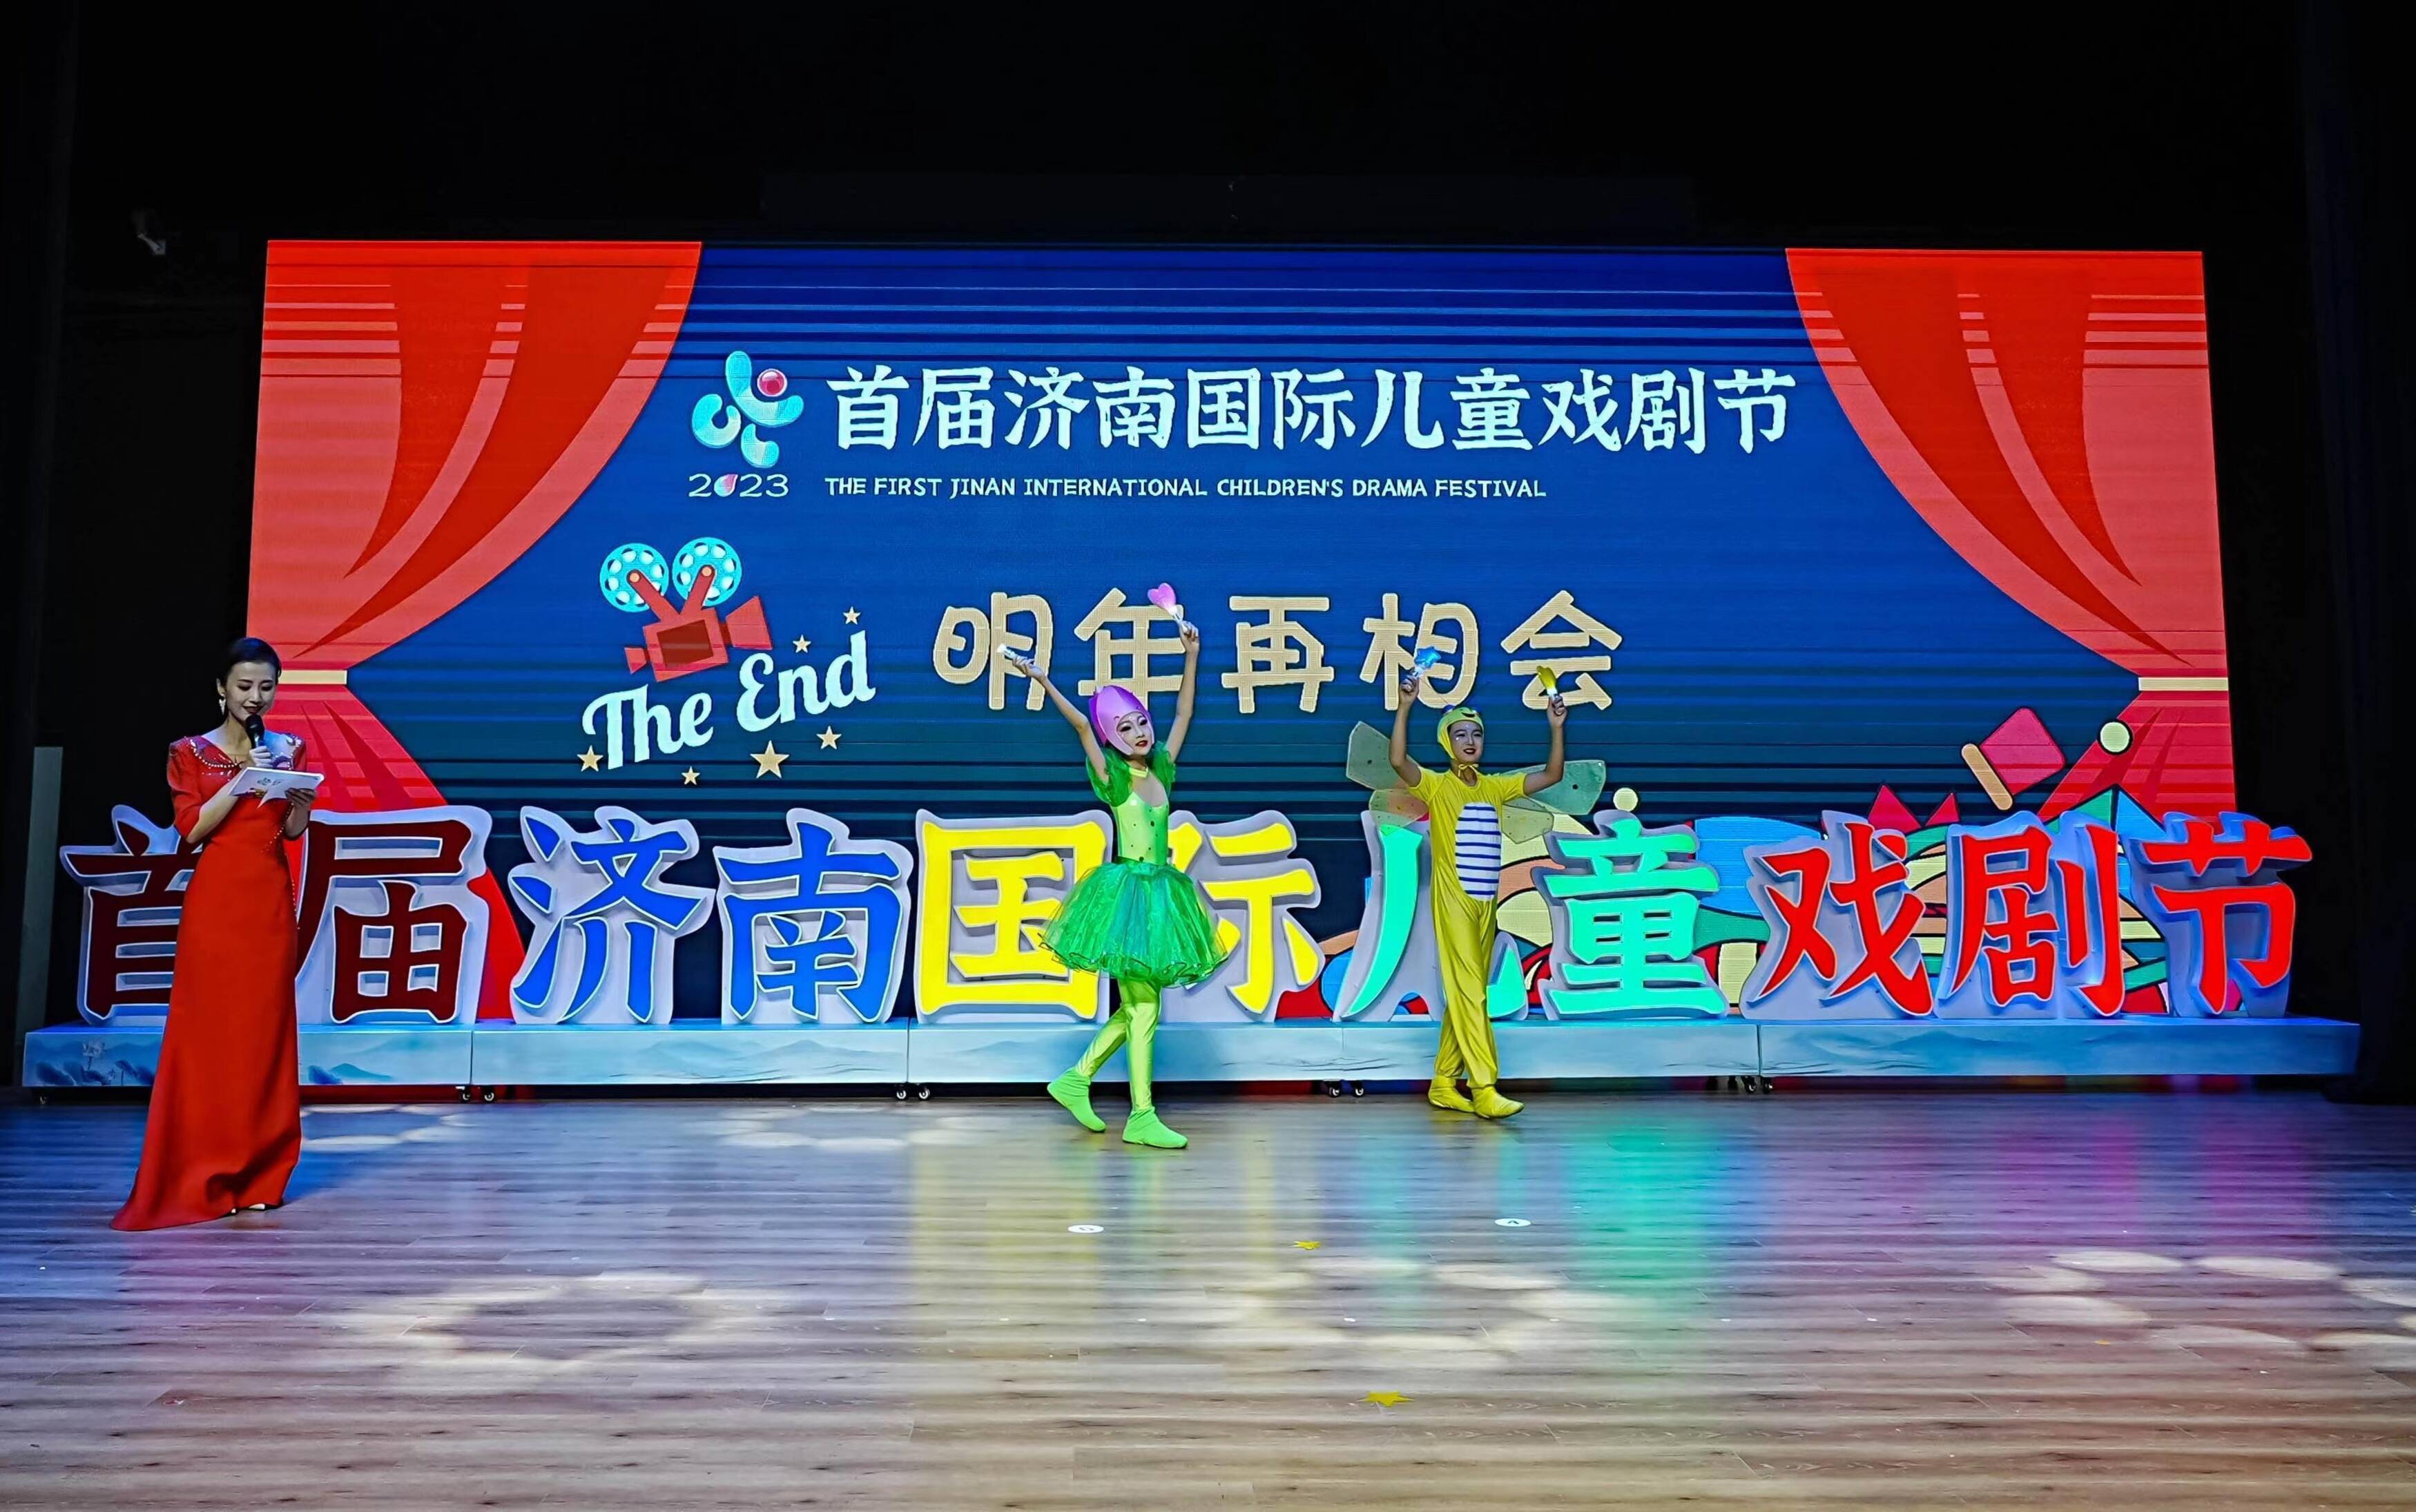 儿童戏剧节在2023年7月成功举行以来,这场以童话泉城戏聚济南为主题